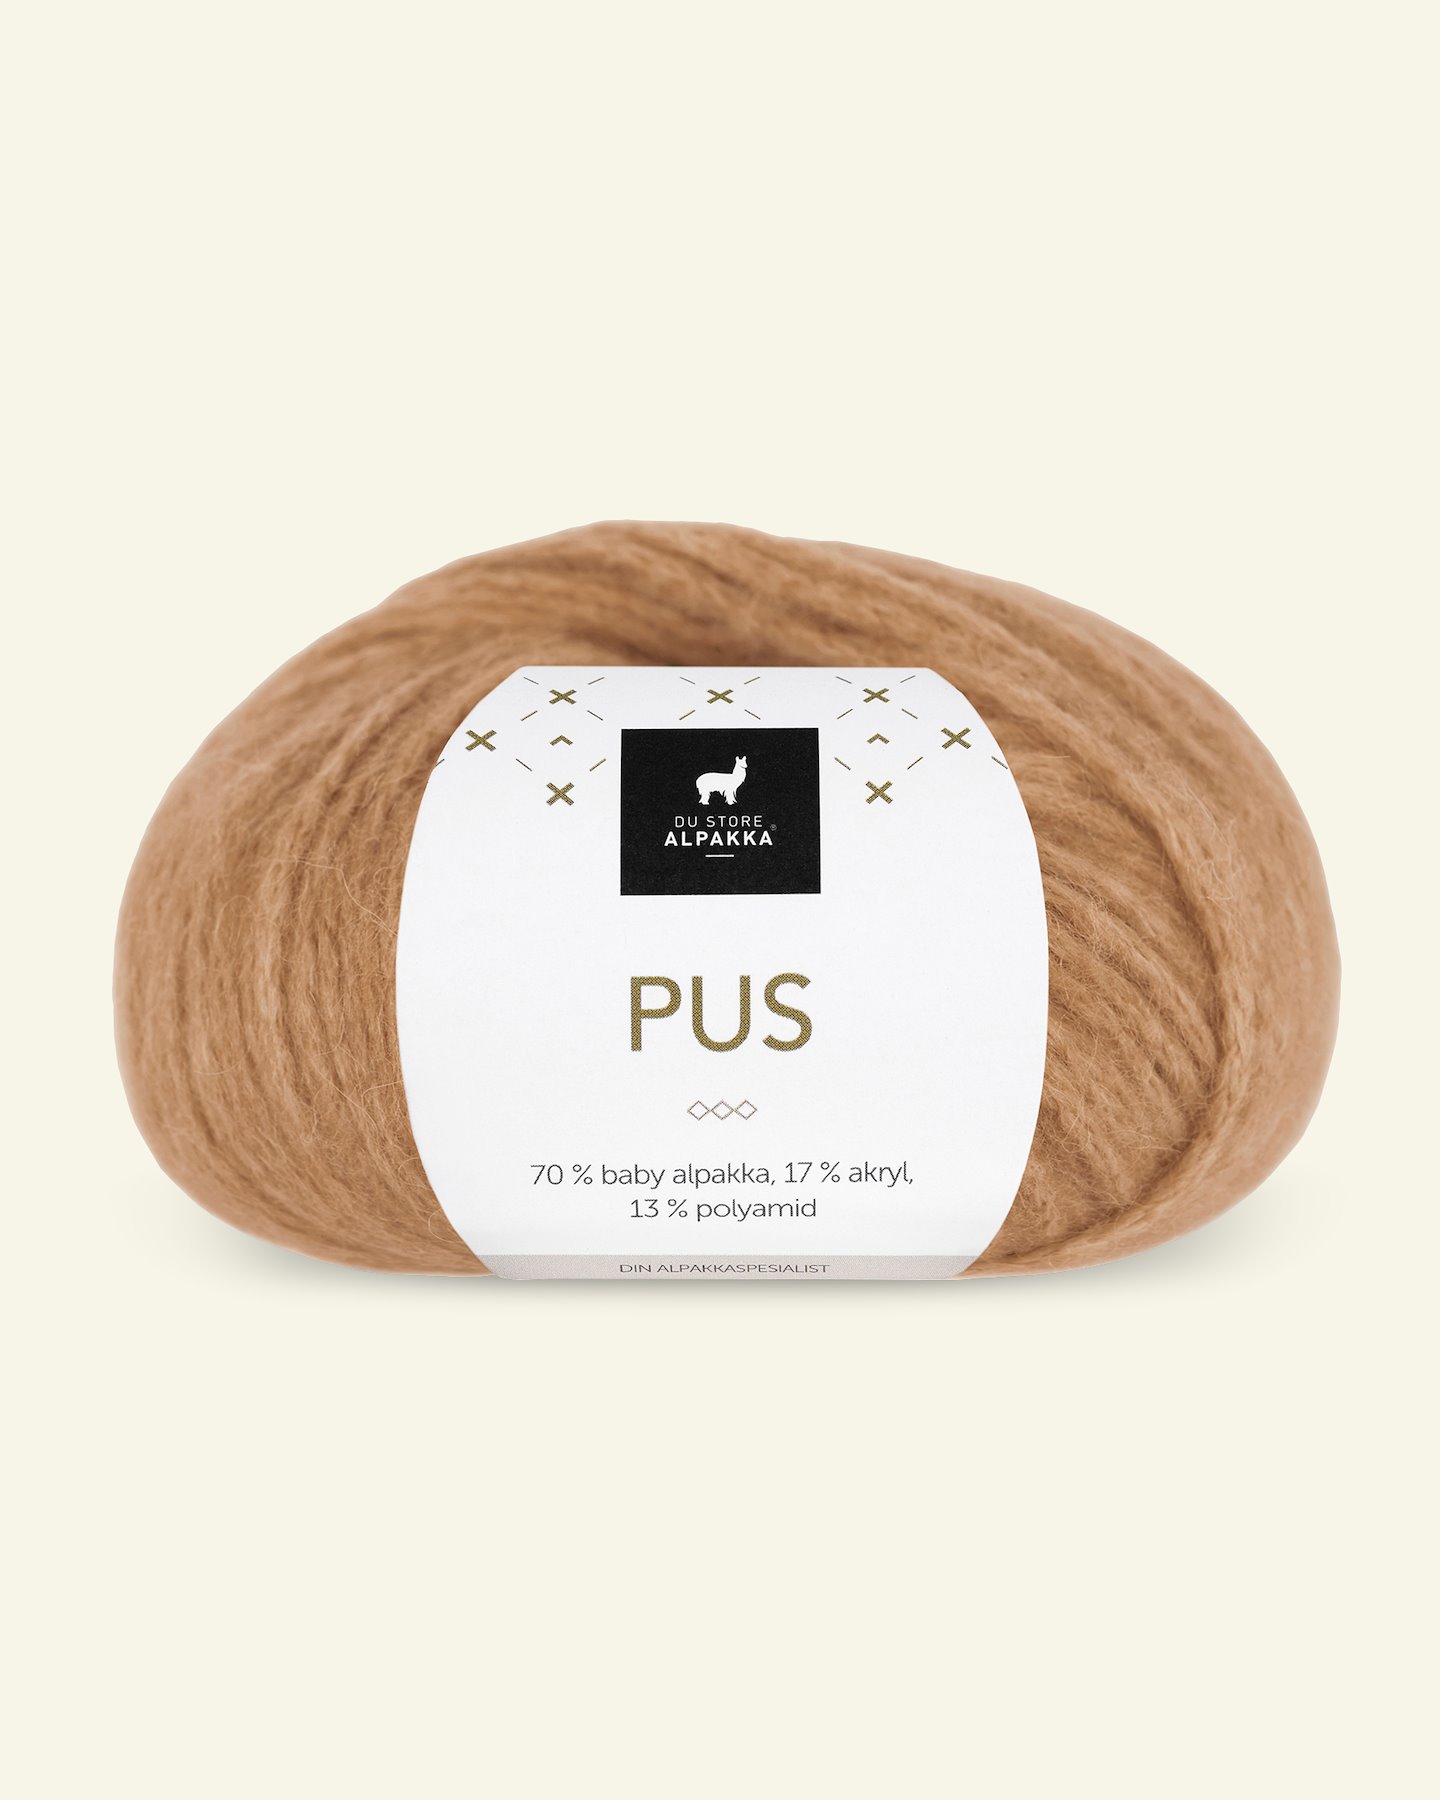 Du Store Alpakka, alpaca mixed yarn "Pus", caramel (4049) 90000732_pack